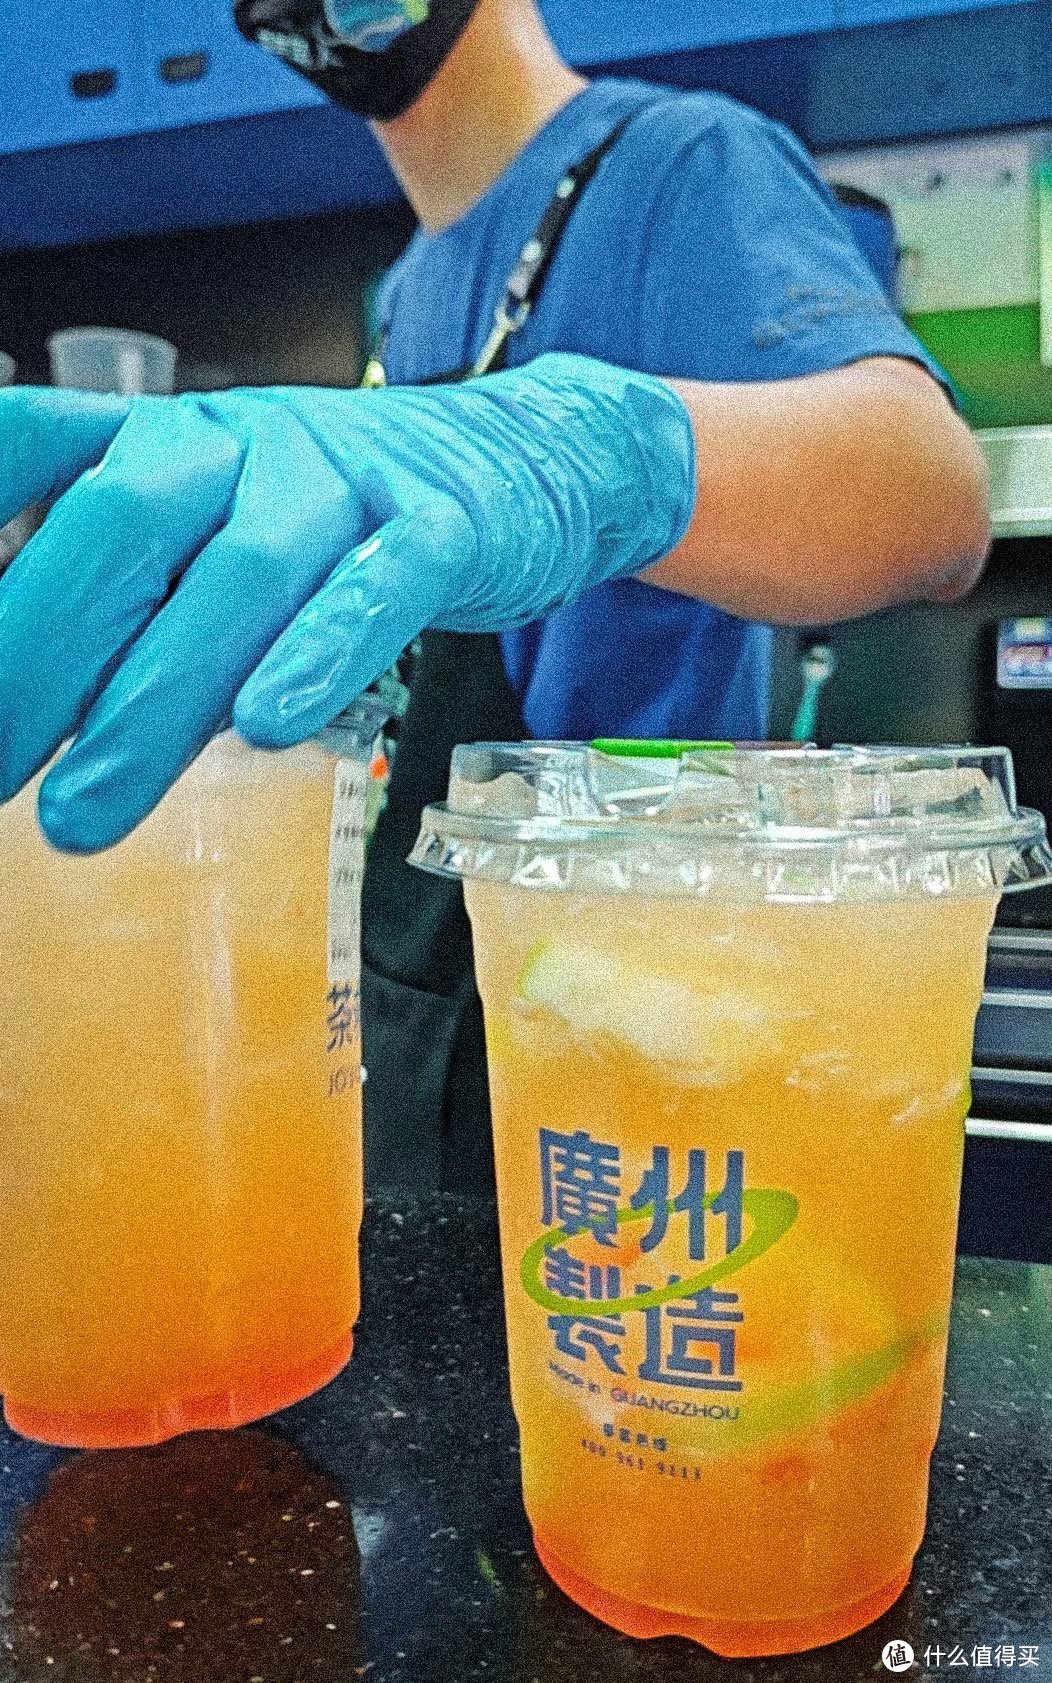 在广州的夏天，离不开茶救水蜜桃柠檬茶的陪伴。